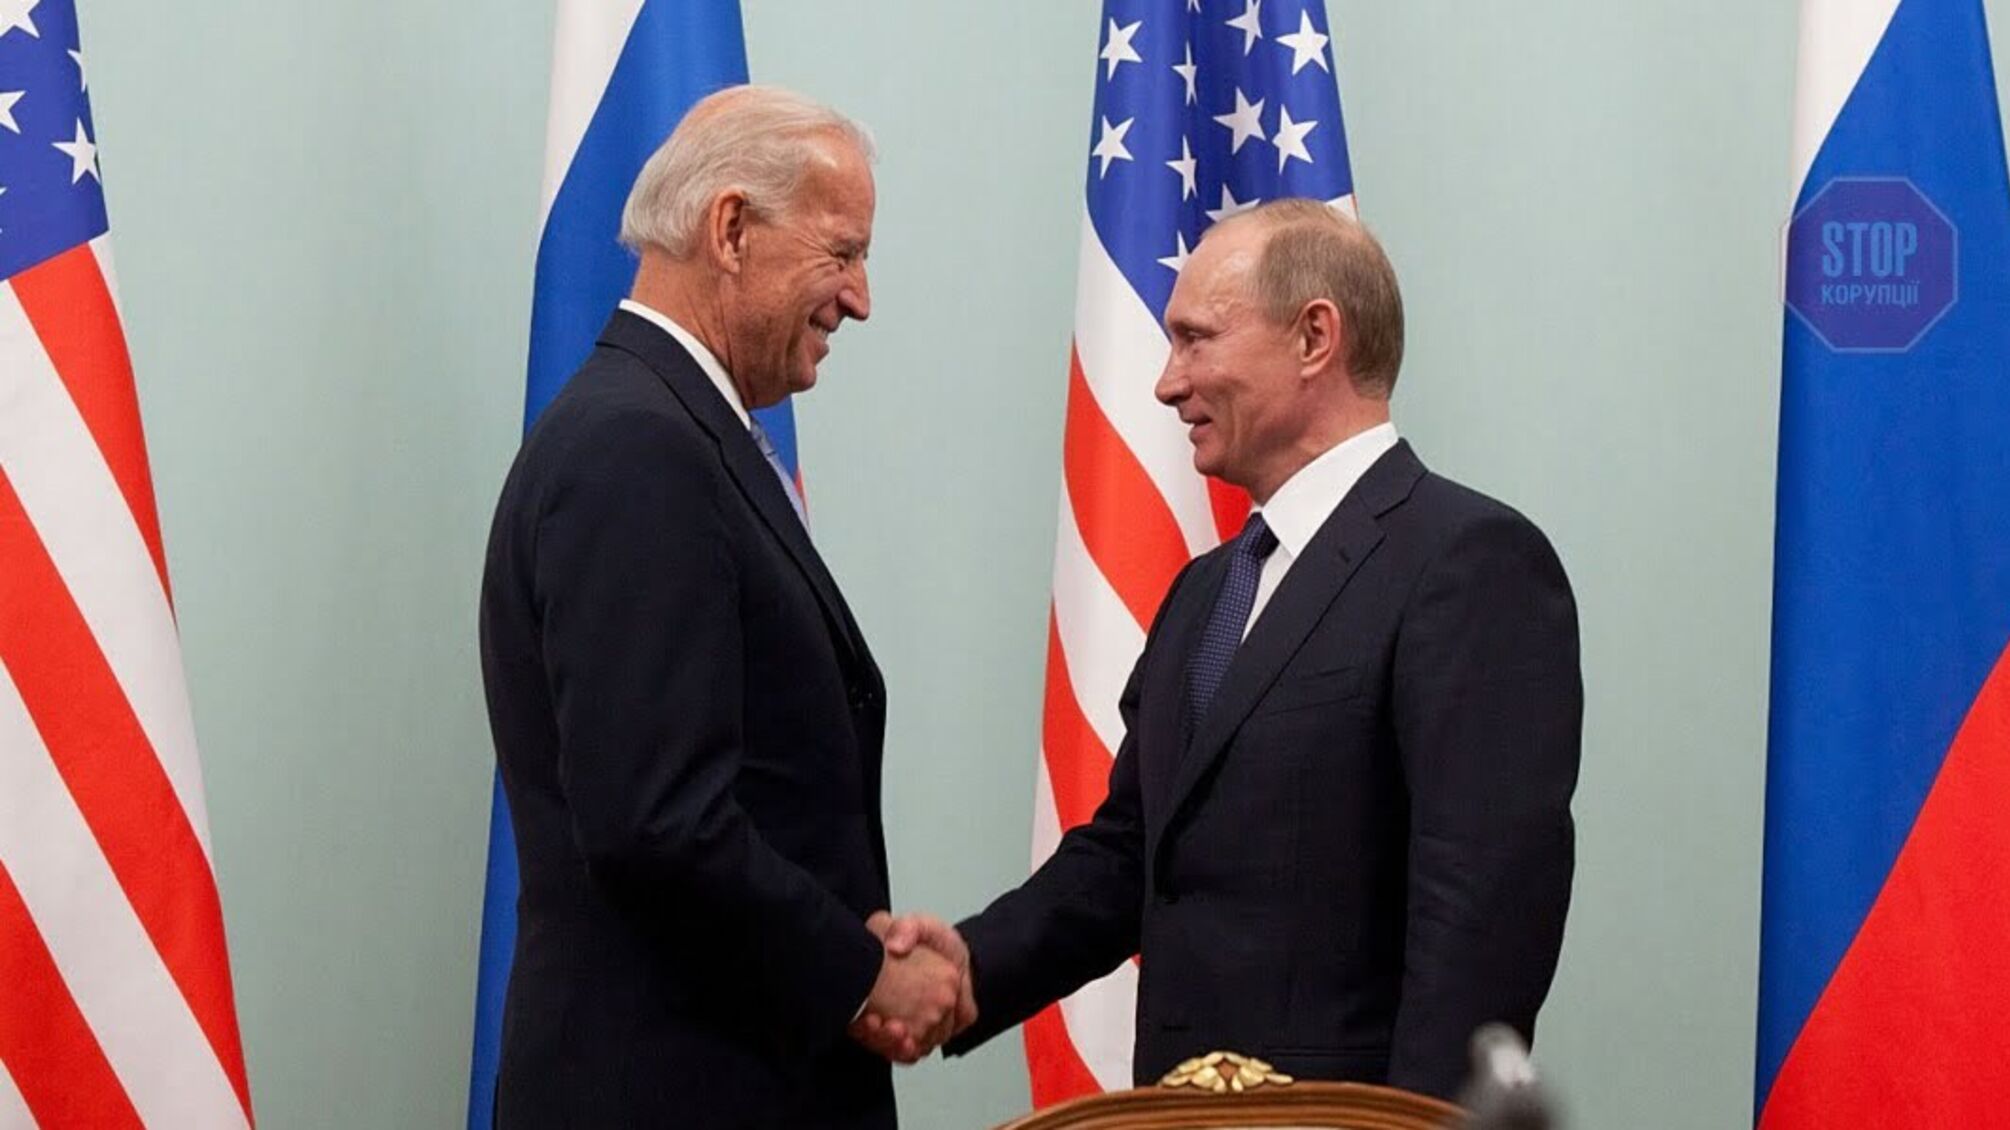 Фінляндія оголосила про готовність провести у себе зустріч президентів США і РФ